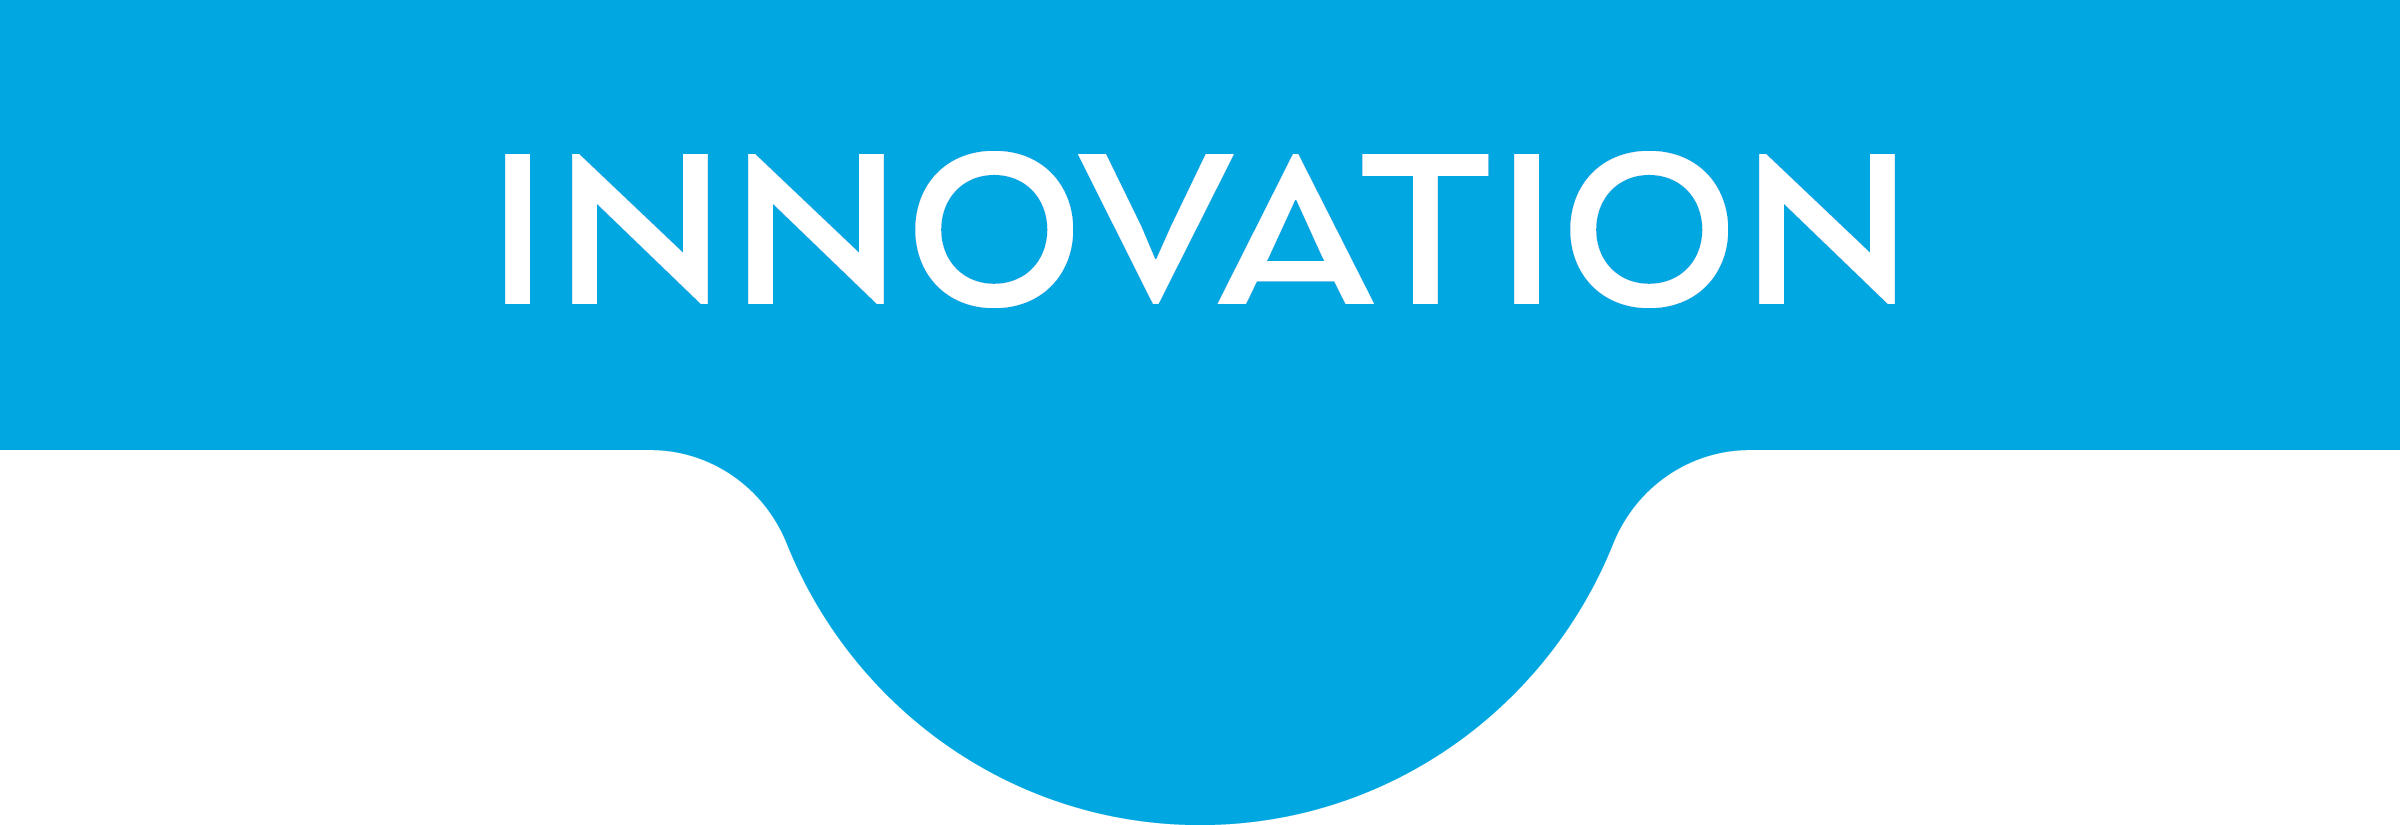 Innovation tab image